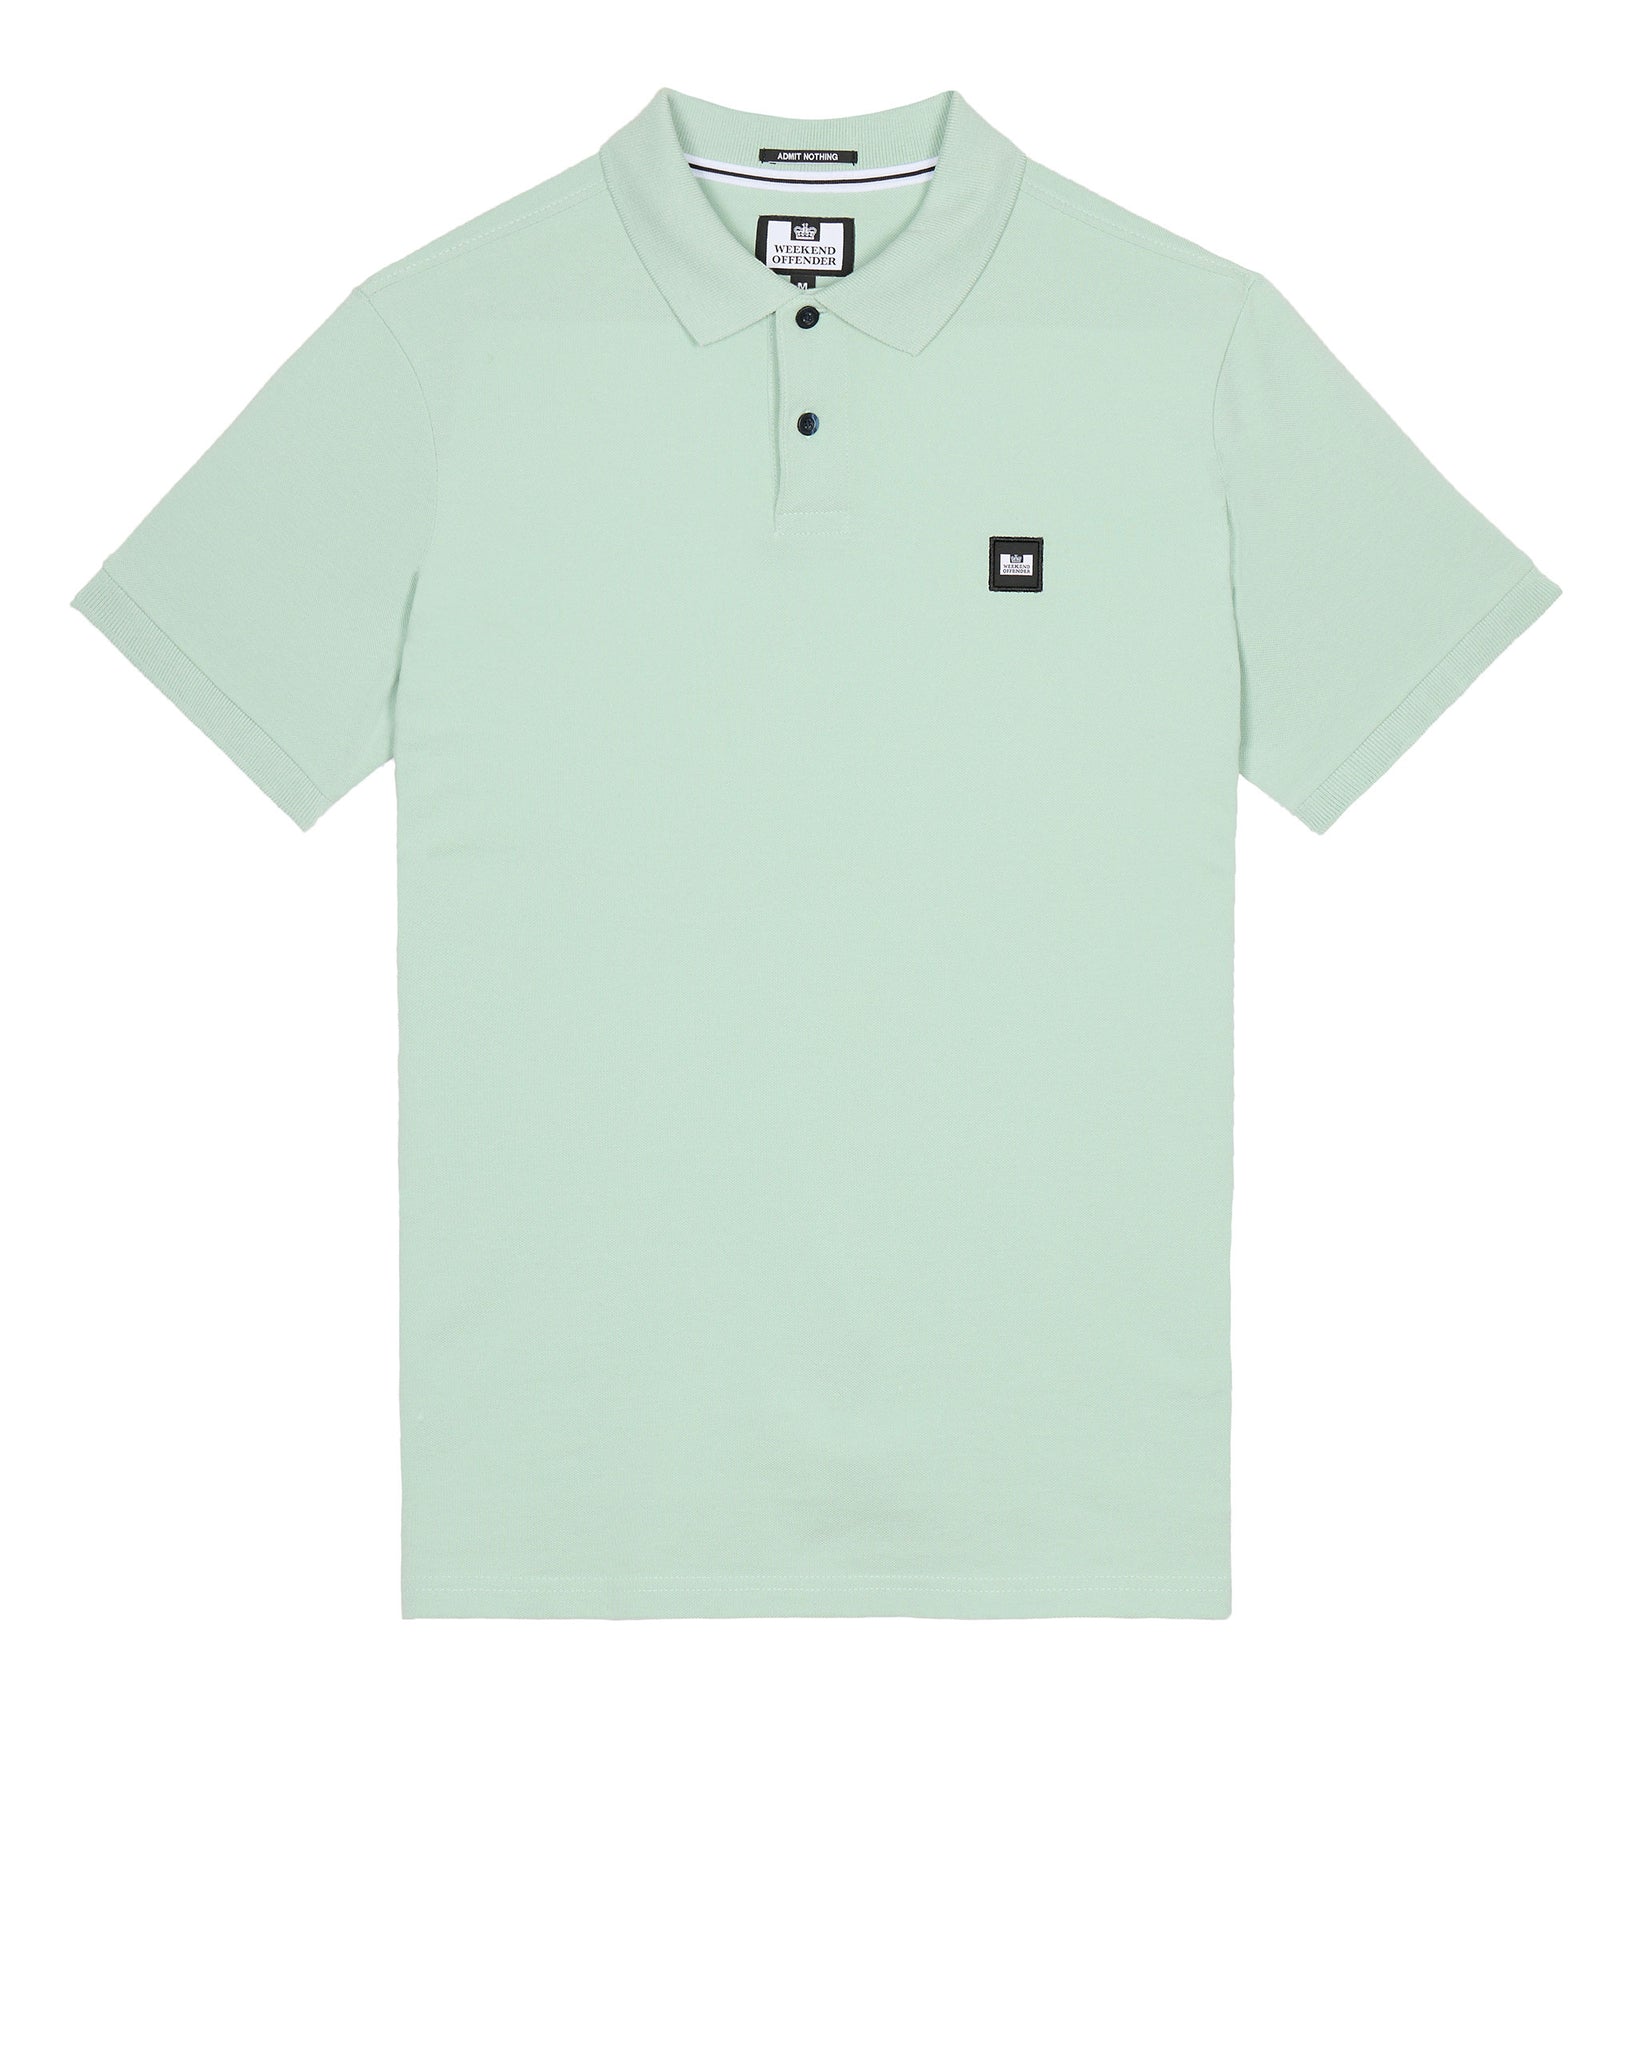 Caneiros Polo Shirt Mint Tea Green